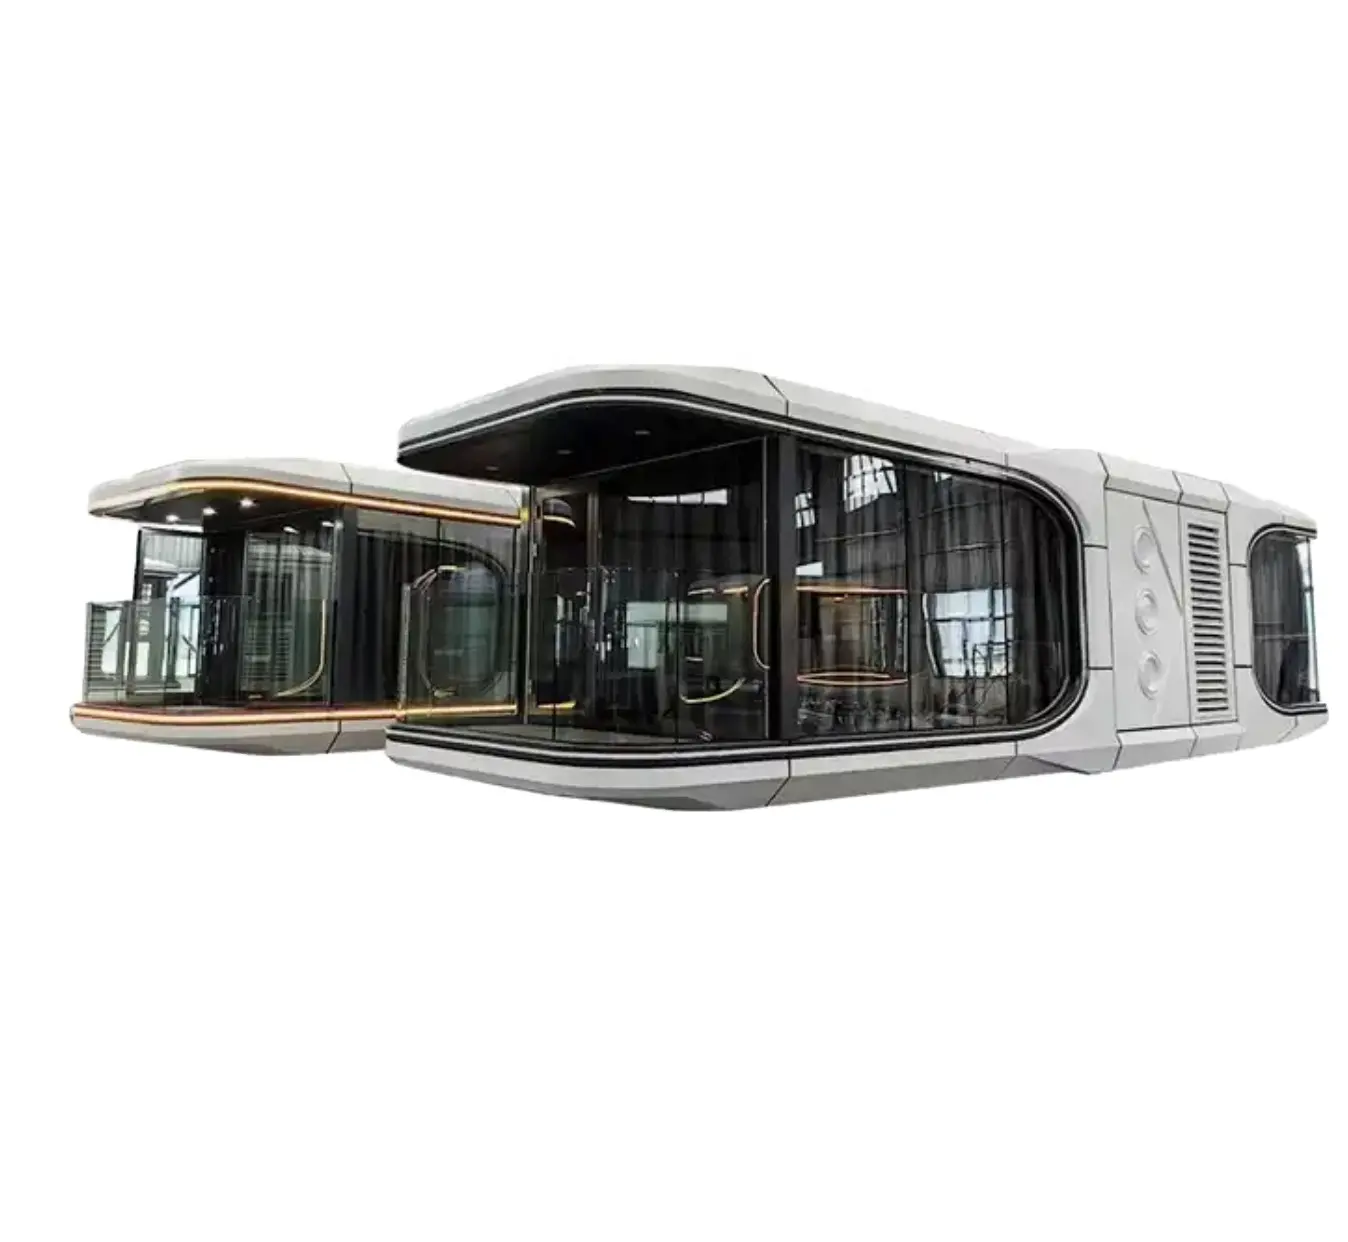 C70 lüks açık taşınabilir cep glaresort Resort otel modern küçük Hangfa uzay kapsülü yanında konteyner ev e7